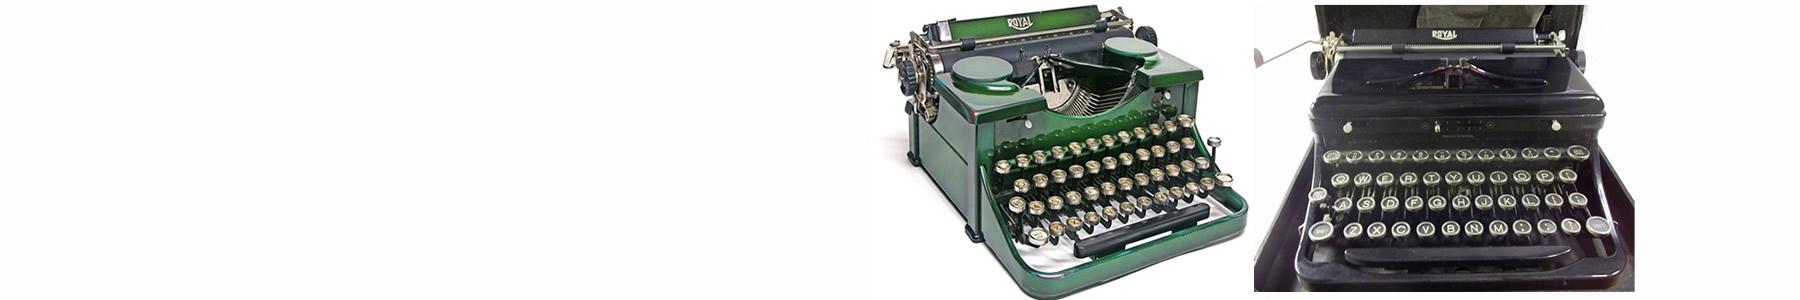 Do You Make Typewriters?